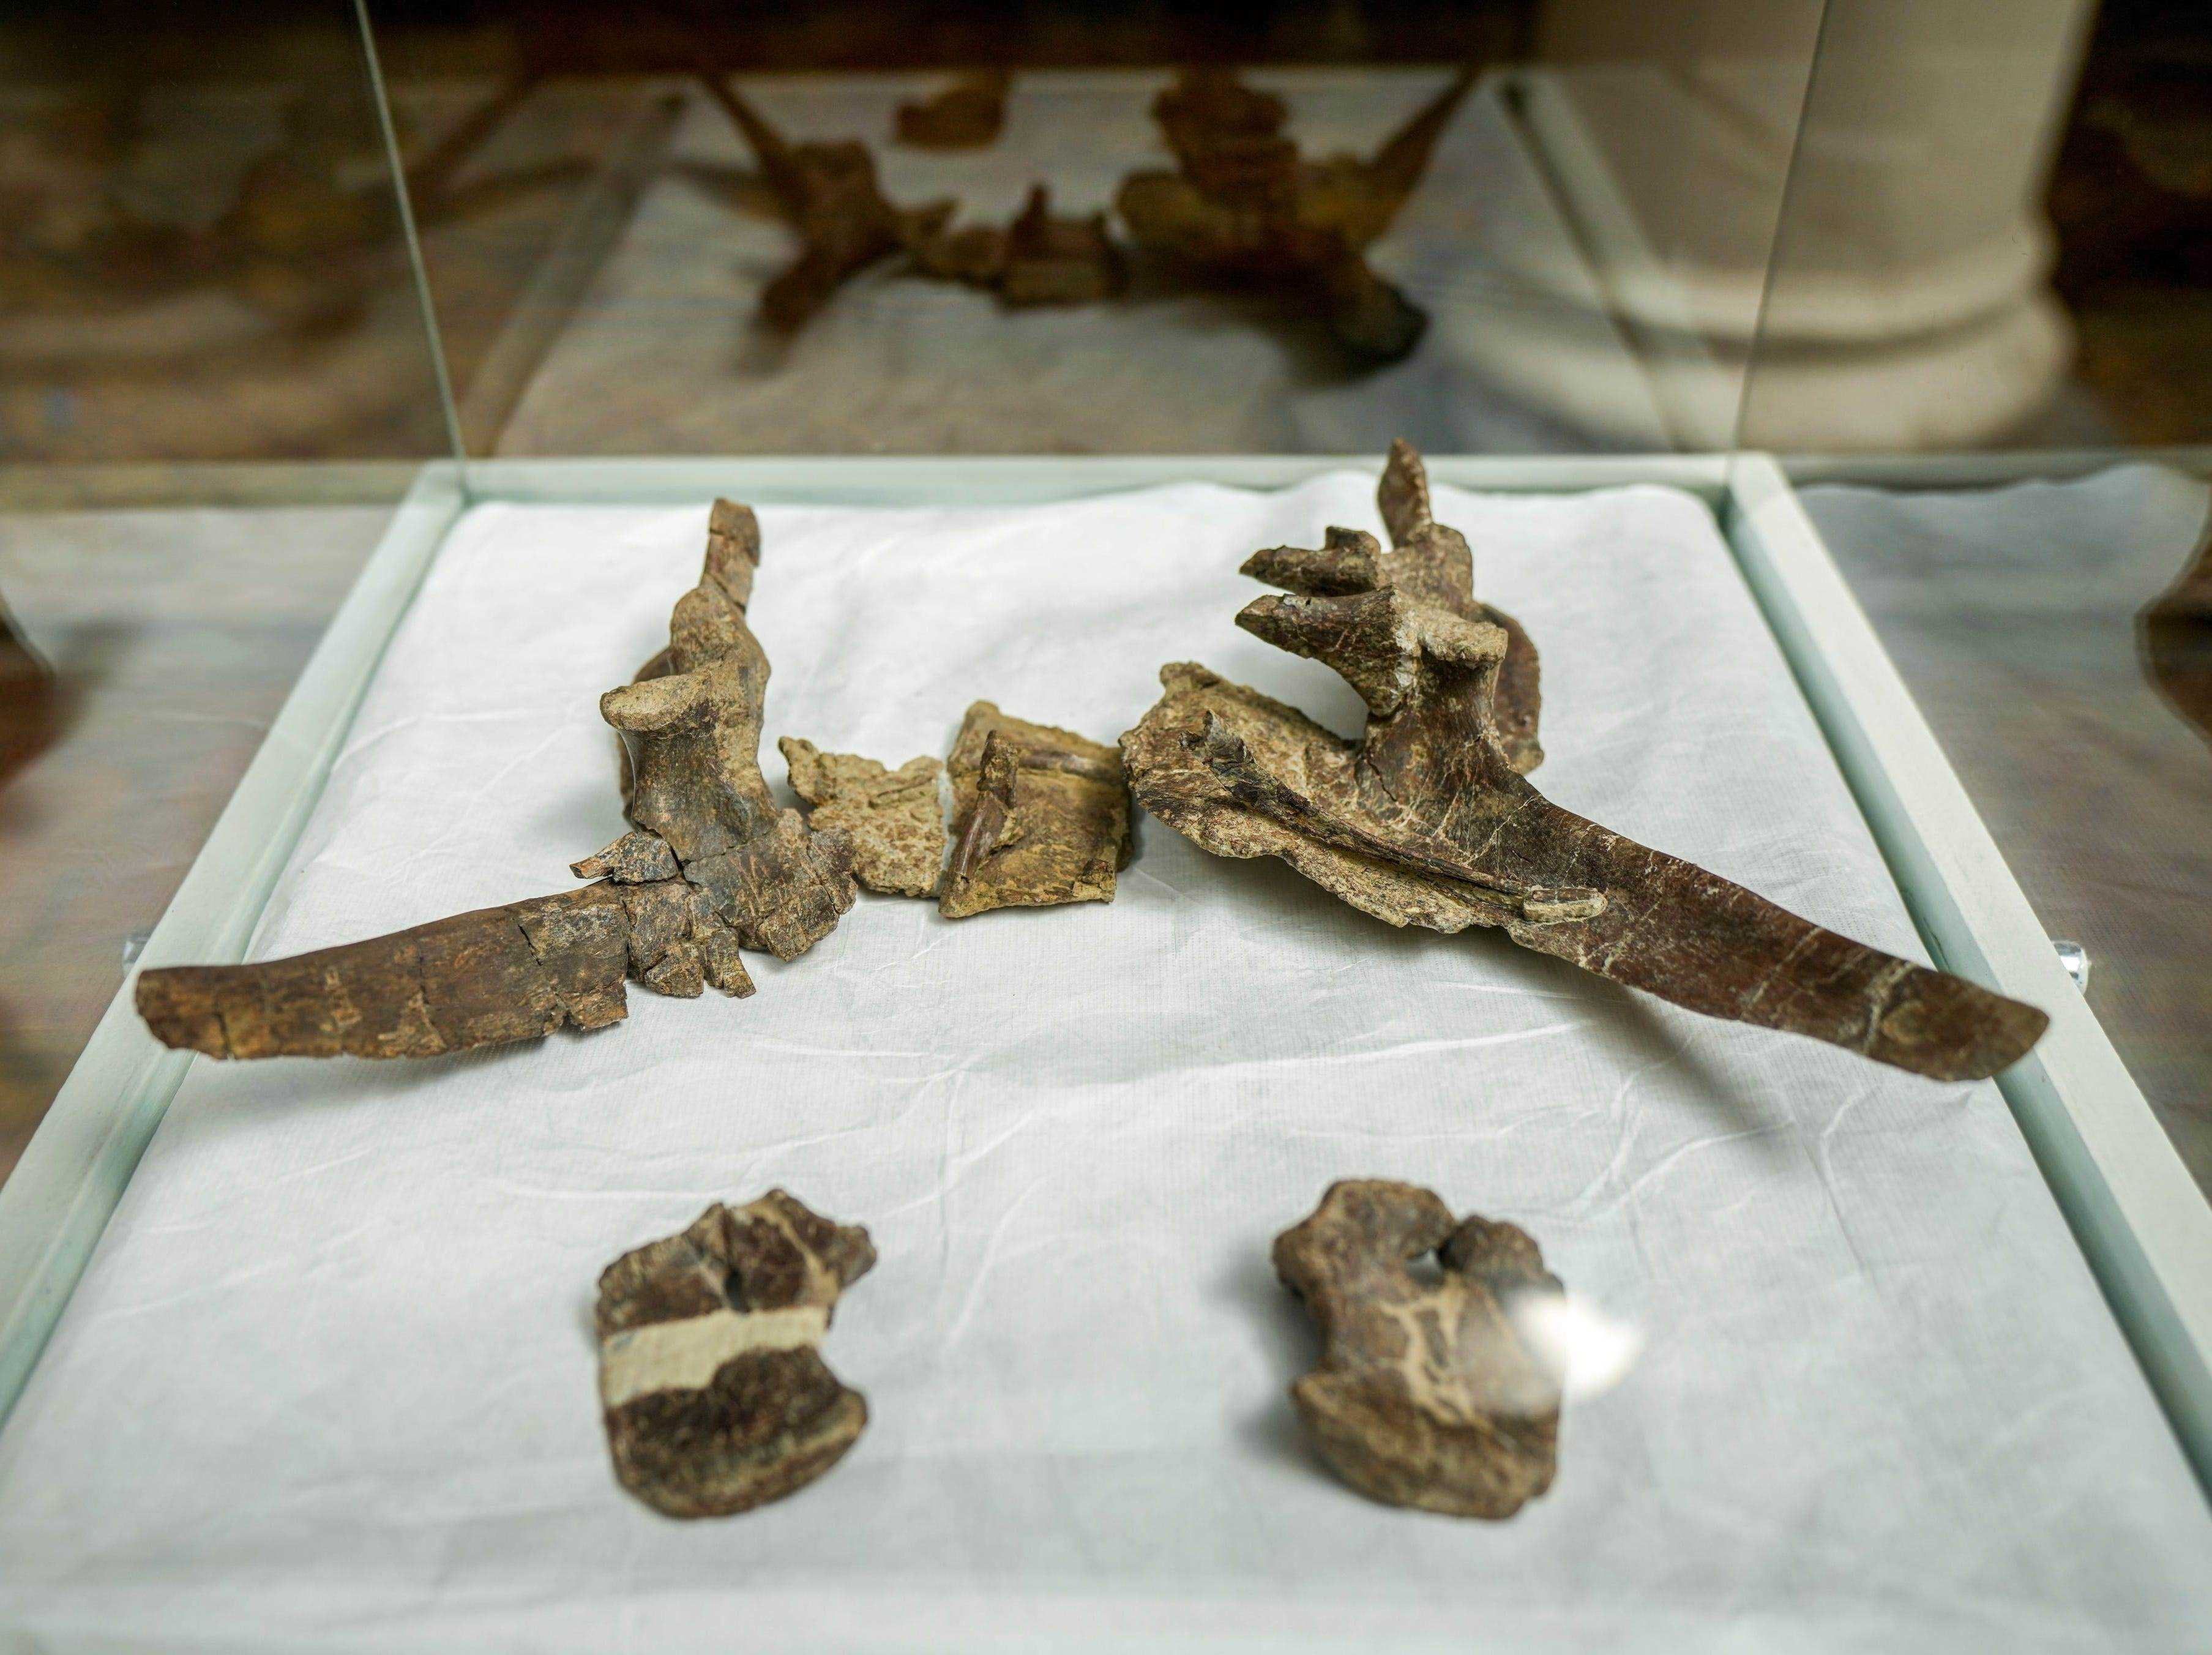 Mehrere der versteinerten Überreste des Steguros elengassen, eines neu identifizierten gepanzerten Dinosauriers, der das chilenische Patagonien bewohnte, werden während einer Pressekonferenz in Santiago, Chile, am Mittwoch, den 1. Dezember 2021, ausgestellt.